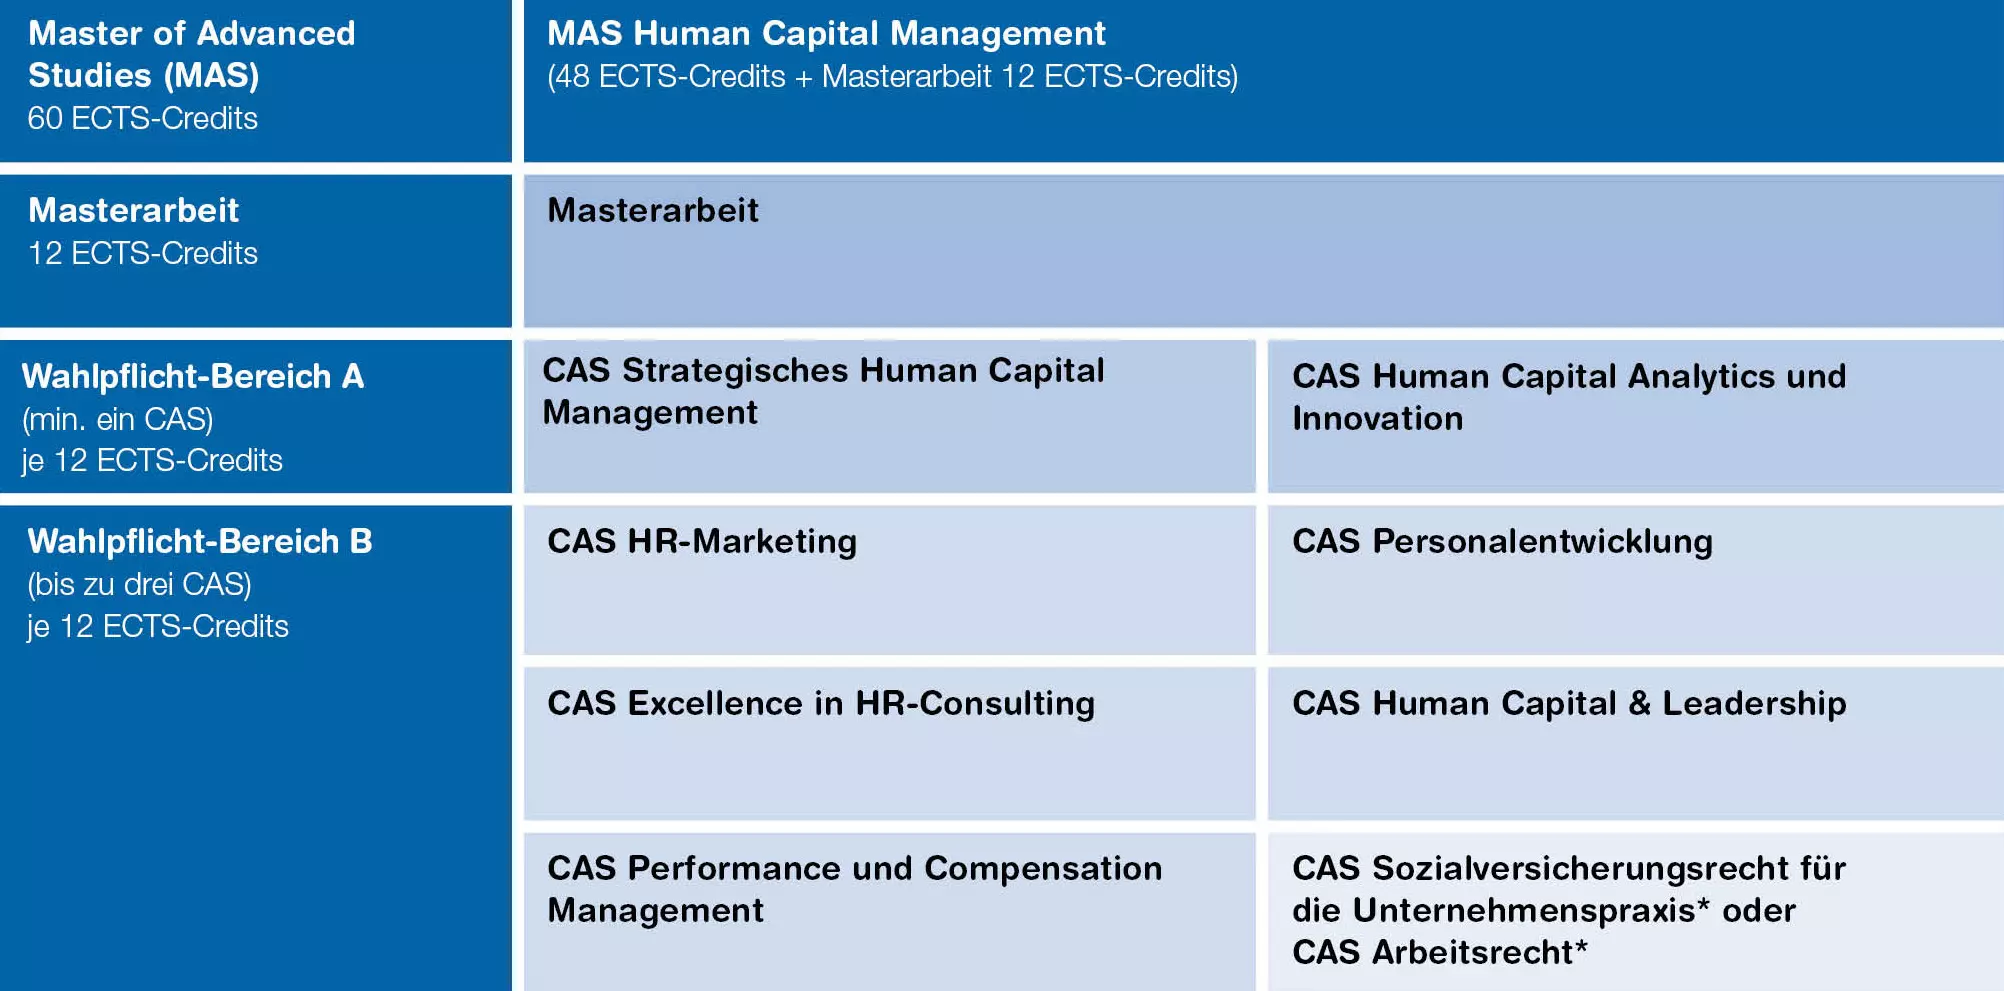 Aufbau des MAS Human Capital Management